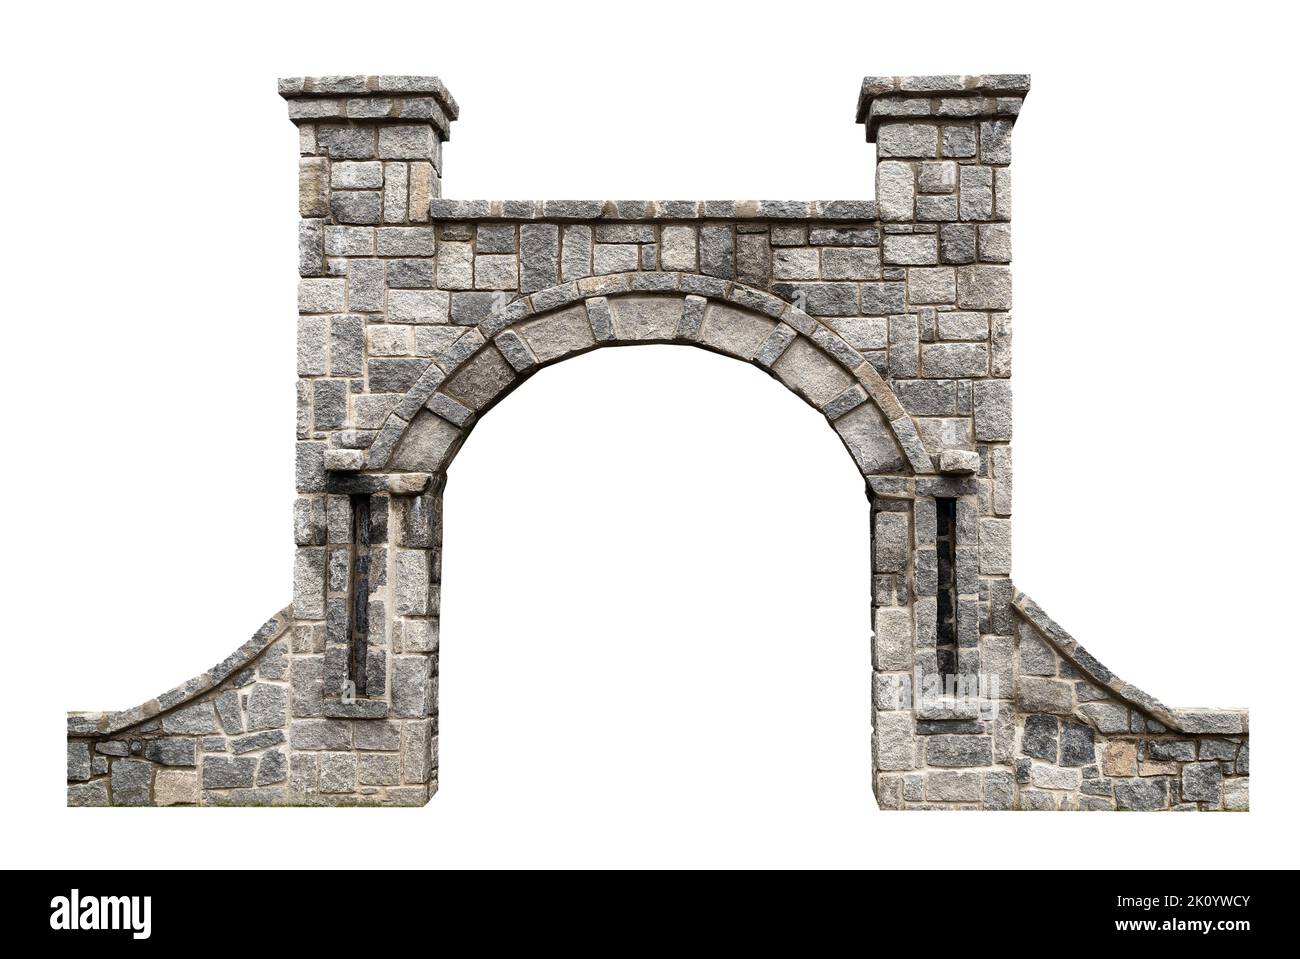 vista frontale primo piano di una porta antica con arcate in pietra architettonica e pareti circostanti isolate su sfondo bianco Foto Stock